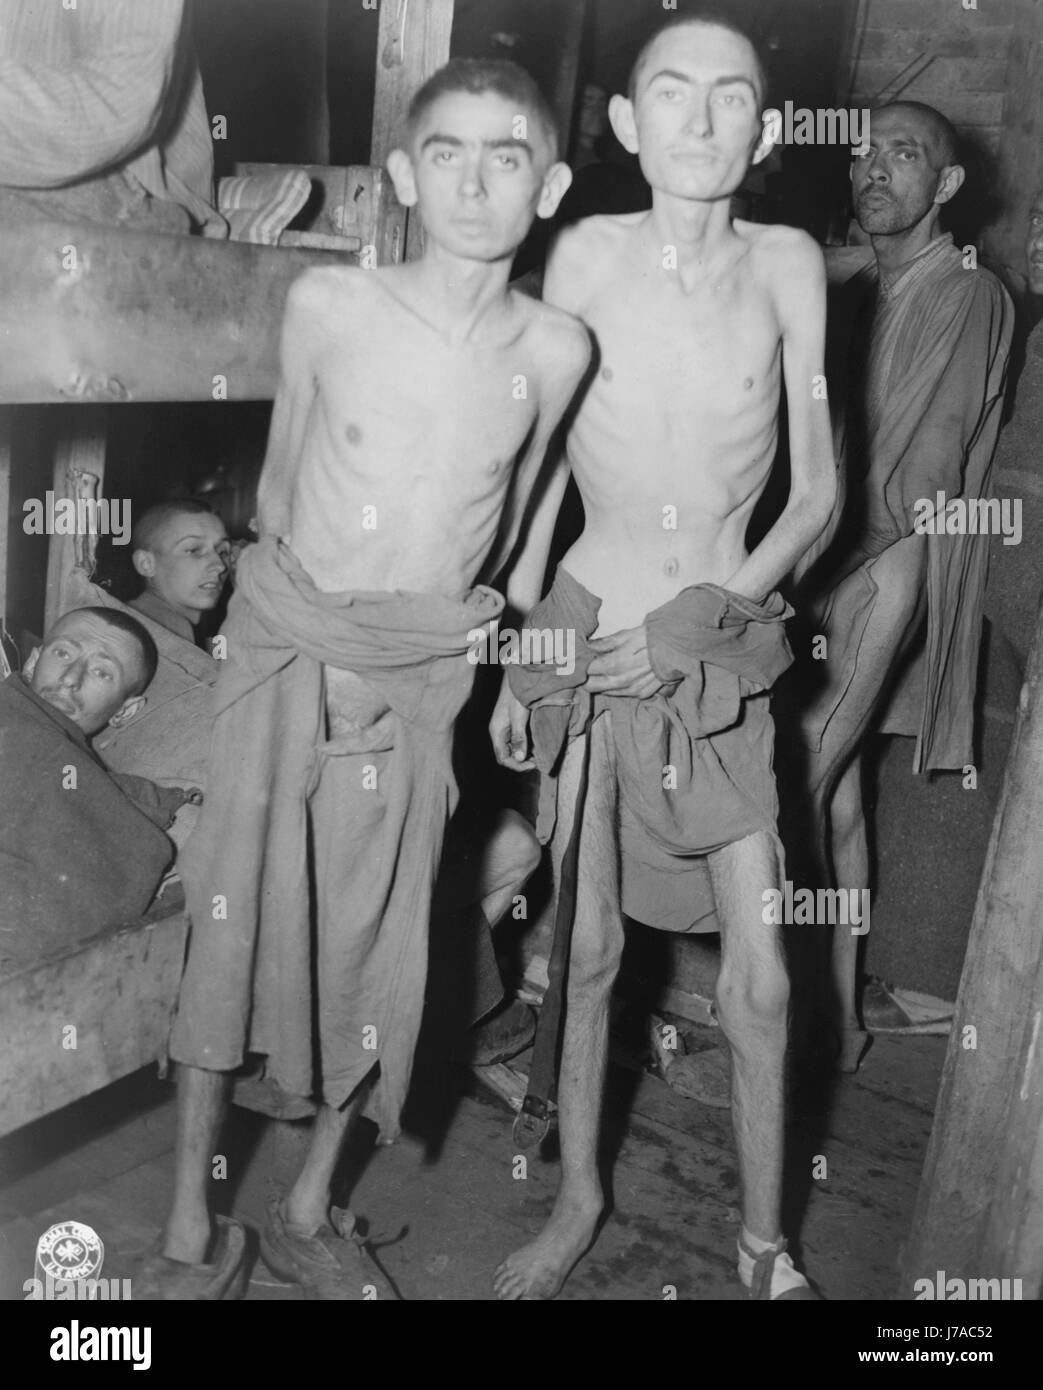 Les hommes souffrant de faim dans un camp de concentration Nazi, Ampfing, Allemagne, 1945. Banque D'Images